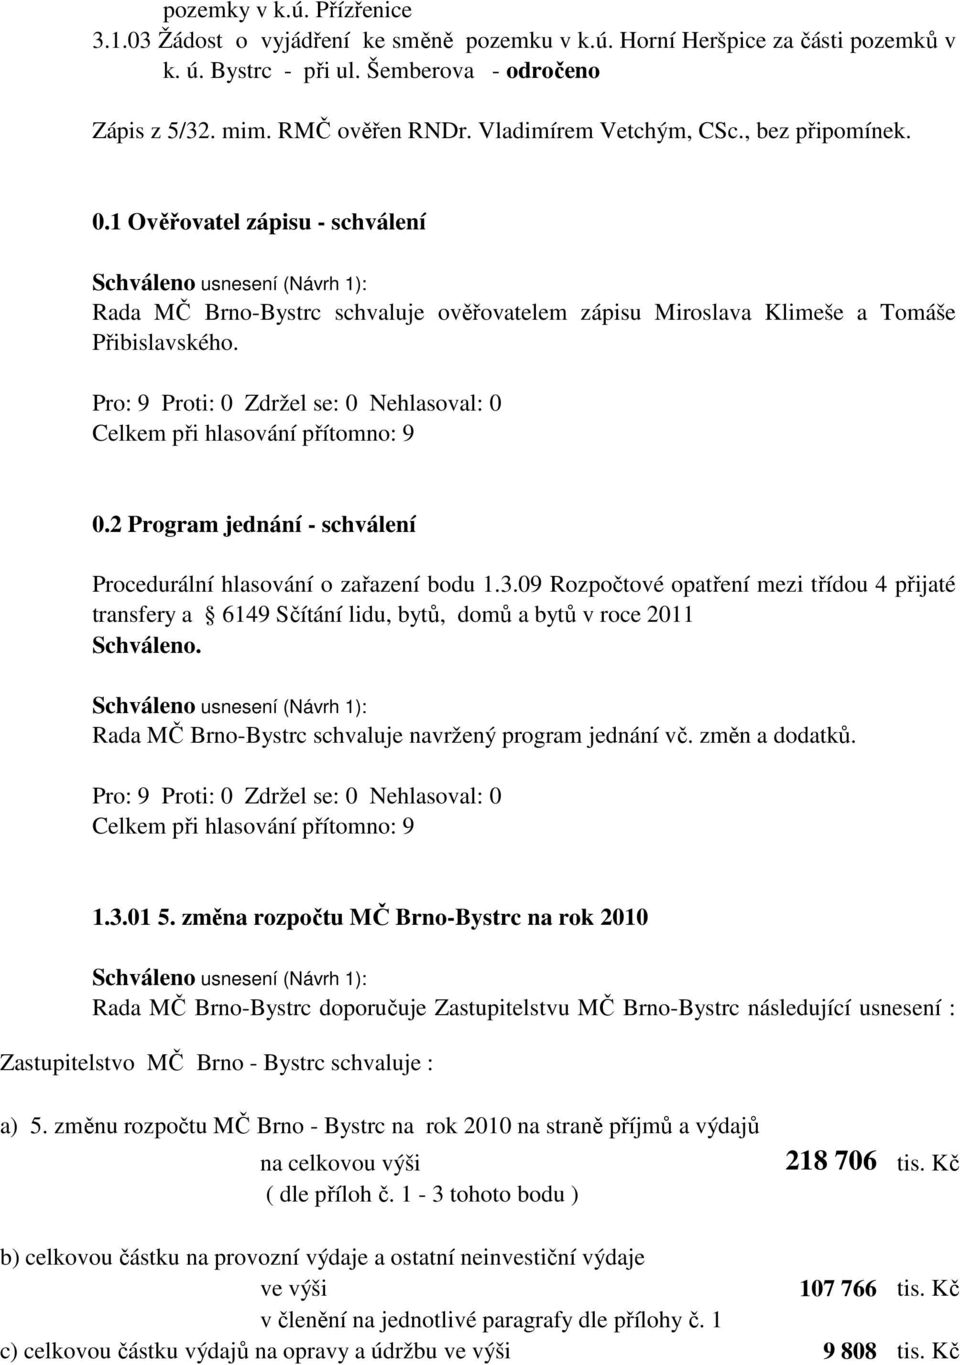 3.09 Rozpočtové opatření mezi třídou 4 přijaté transfery a 6149 Sčítání lidu, bytů, domů a bytů v roce 2011 Schváleno. Rada MČ Brno-Bystrc schvaluje navržený program jednání vč. změn a dodatků. 1.3.01 5.